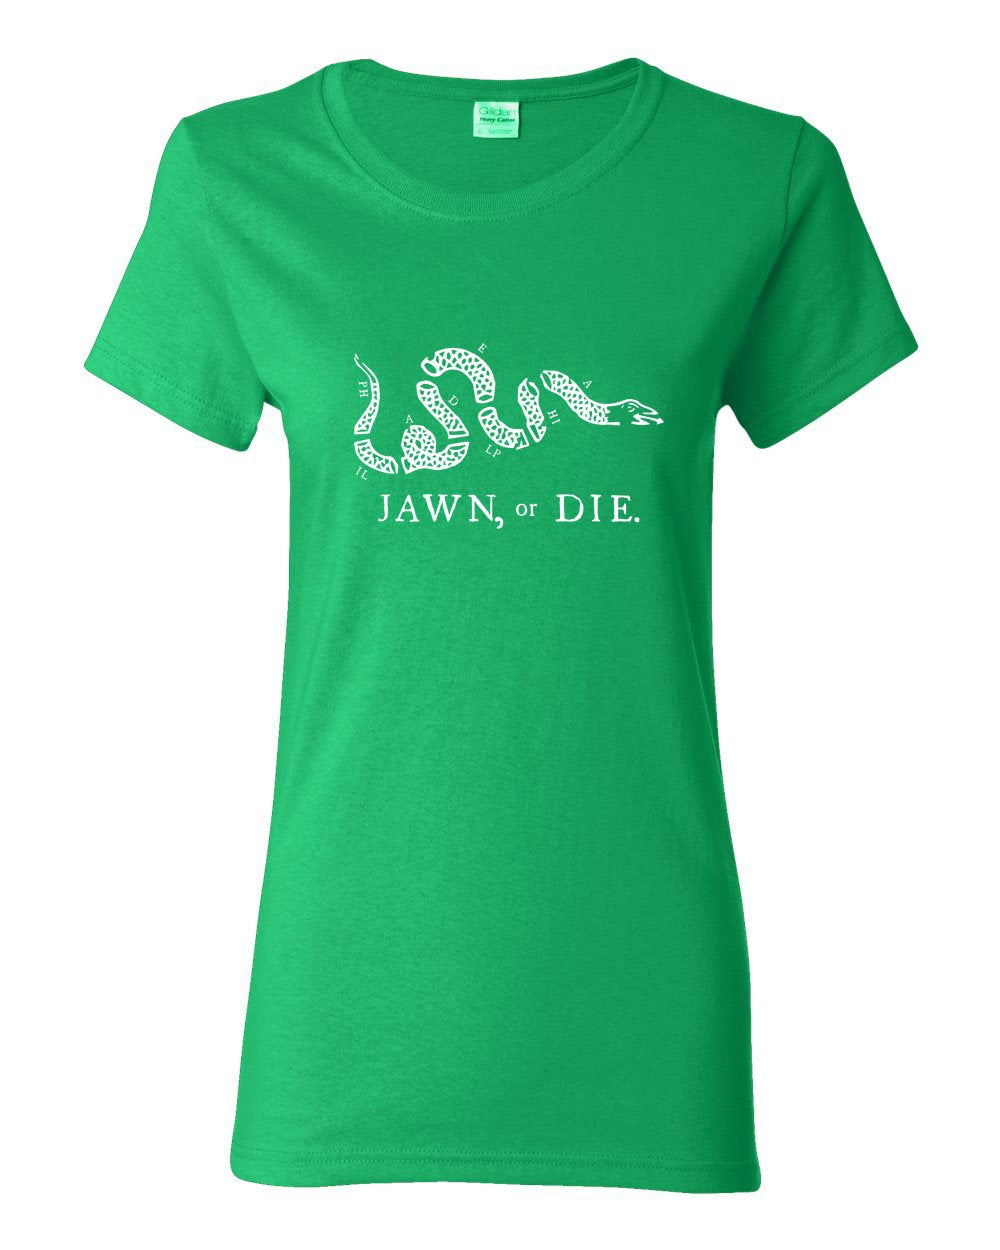 Jawn or Die White Ink LADIES Missy-Fit T-Shirt